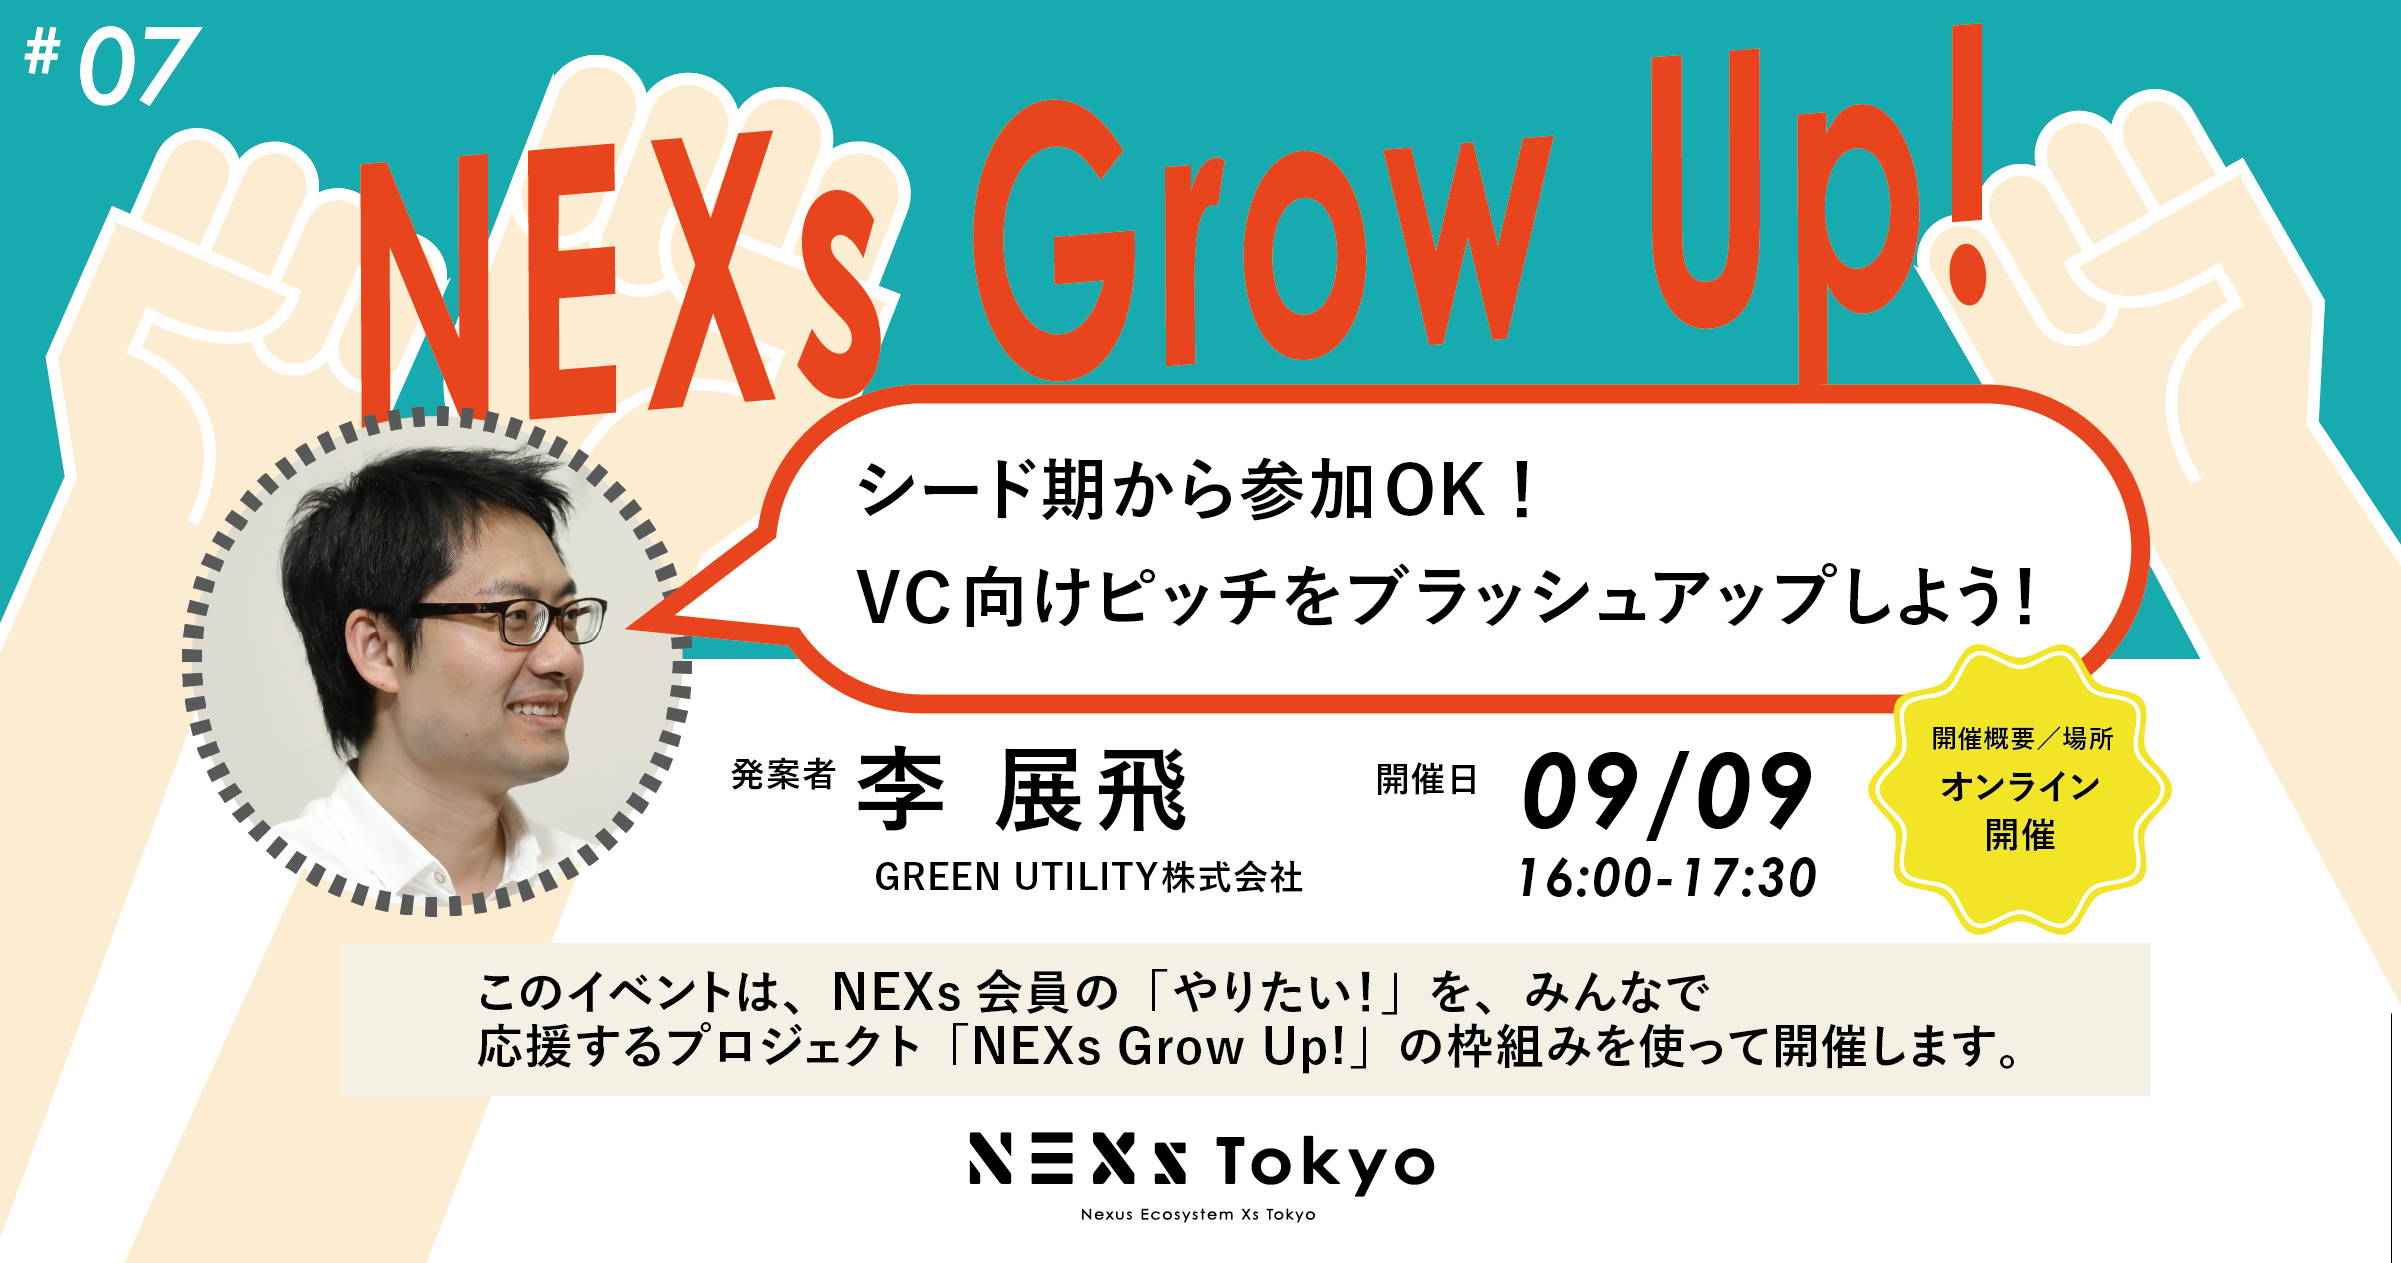 NEXs Grow Up! Vol.7 シード期から参加OK！VC向けピッチをブラッシュアップしよう！